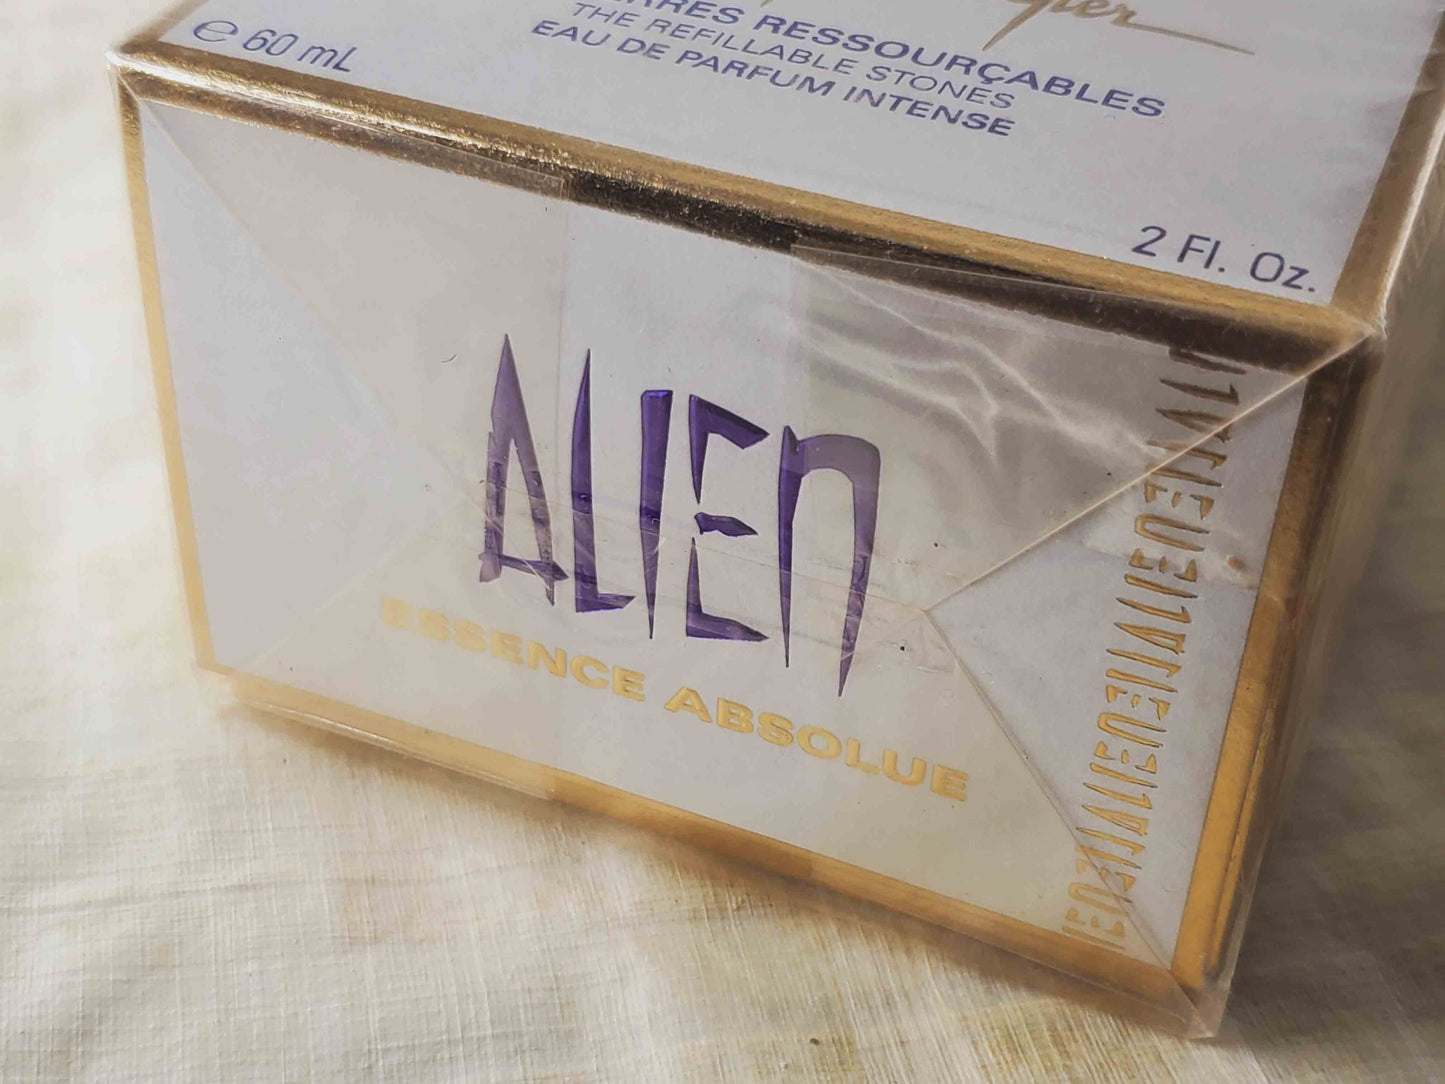 Alien Essence Absolue Mugler for women EDP Spray 60 ml 2 oz OR 30 ml 1 oz, Vintage, Sealed